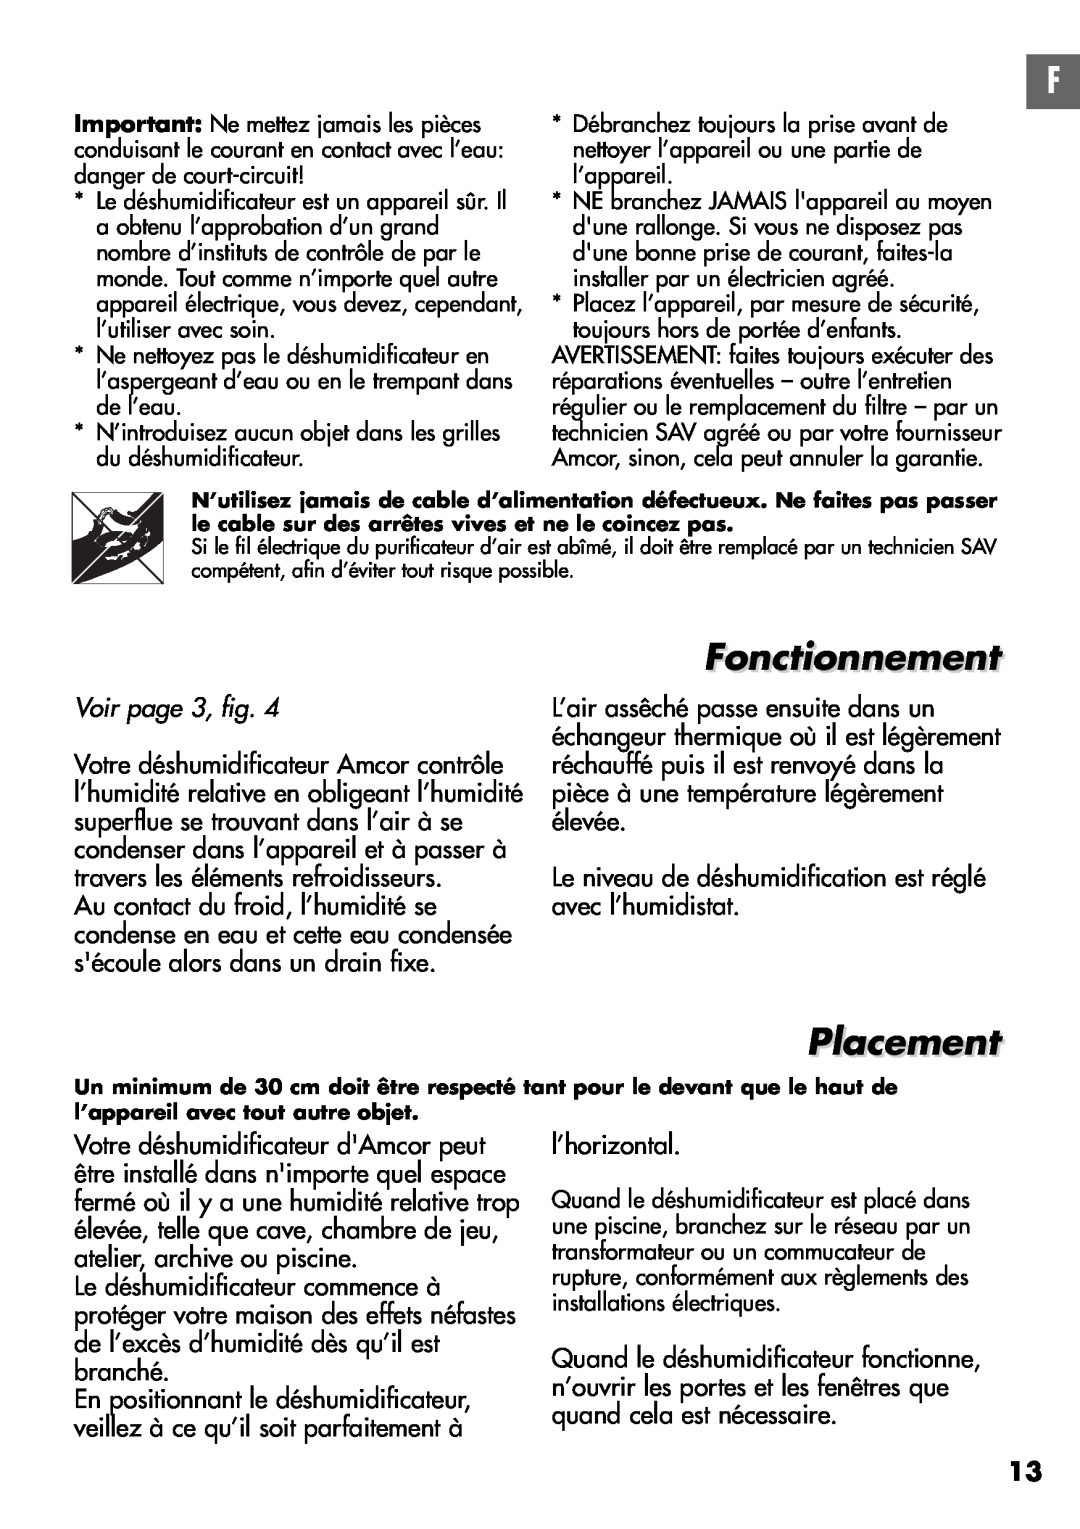 Amcor D950E, D850E instruction manual Fonctionnement, Placement, Voir page 3, fig 